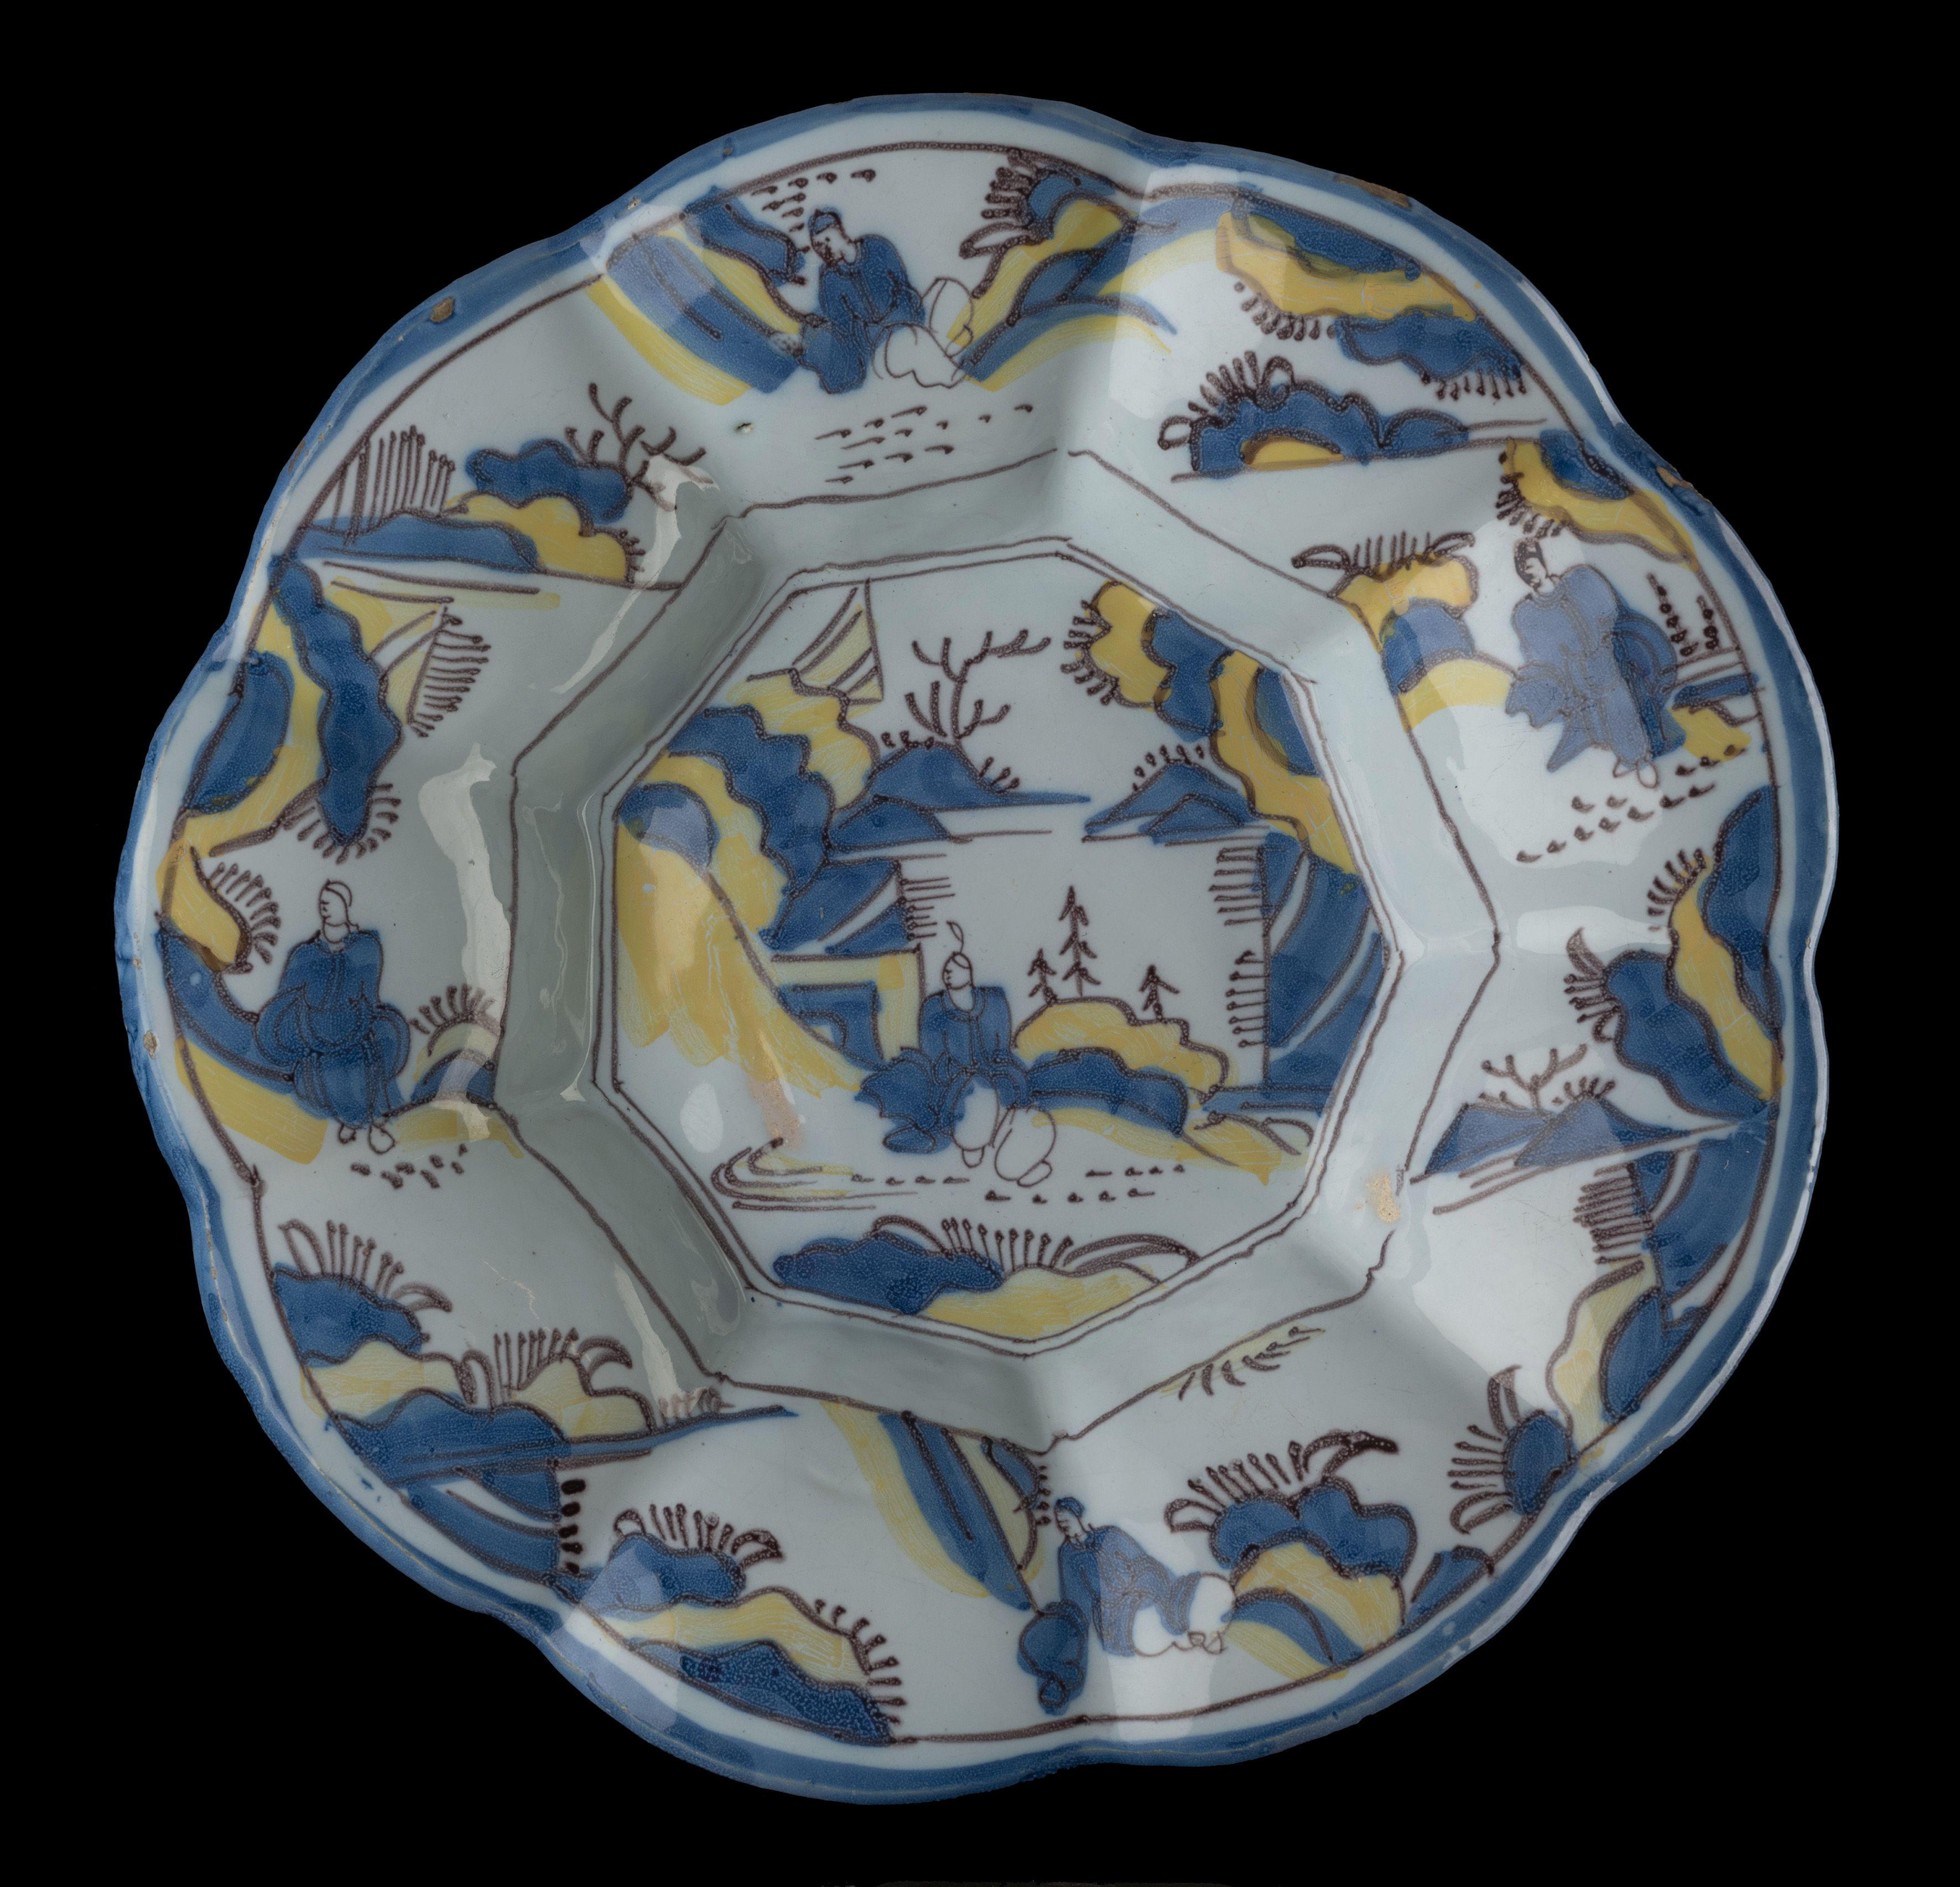 Plat lobé de la Chinoiserie en bleu, jaune et violet. Delft, 1680-1690
Dimensions : diamètre 34 cm / 13.58 in. 

Le plat lobé est composé de neuf larges lobes autour d'un centre à neuf branches et est peint en bleu et jaune avec un décor de